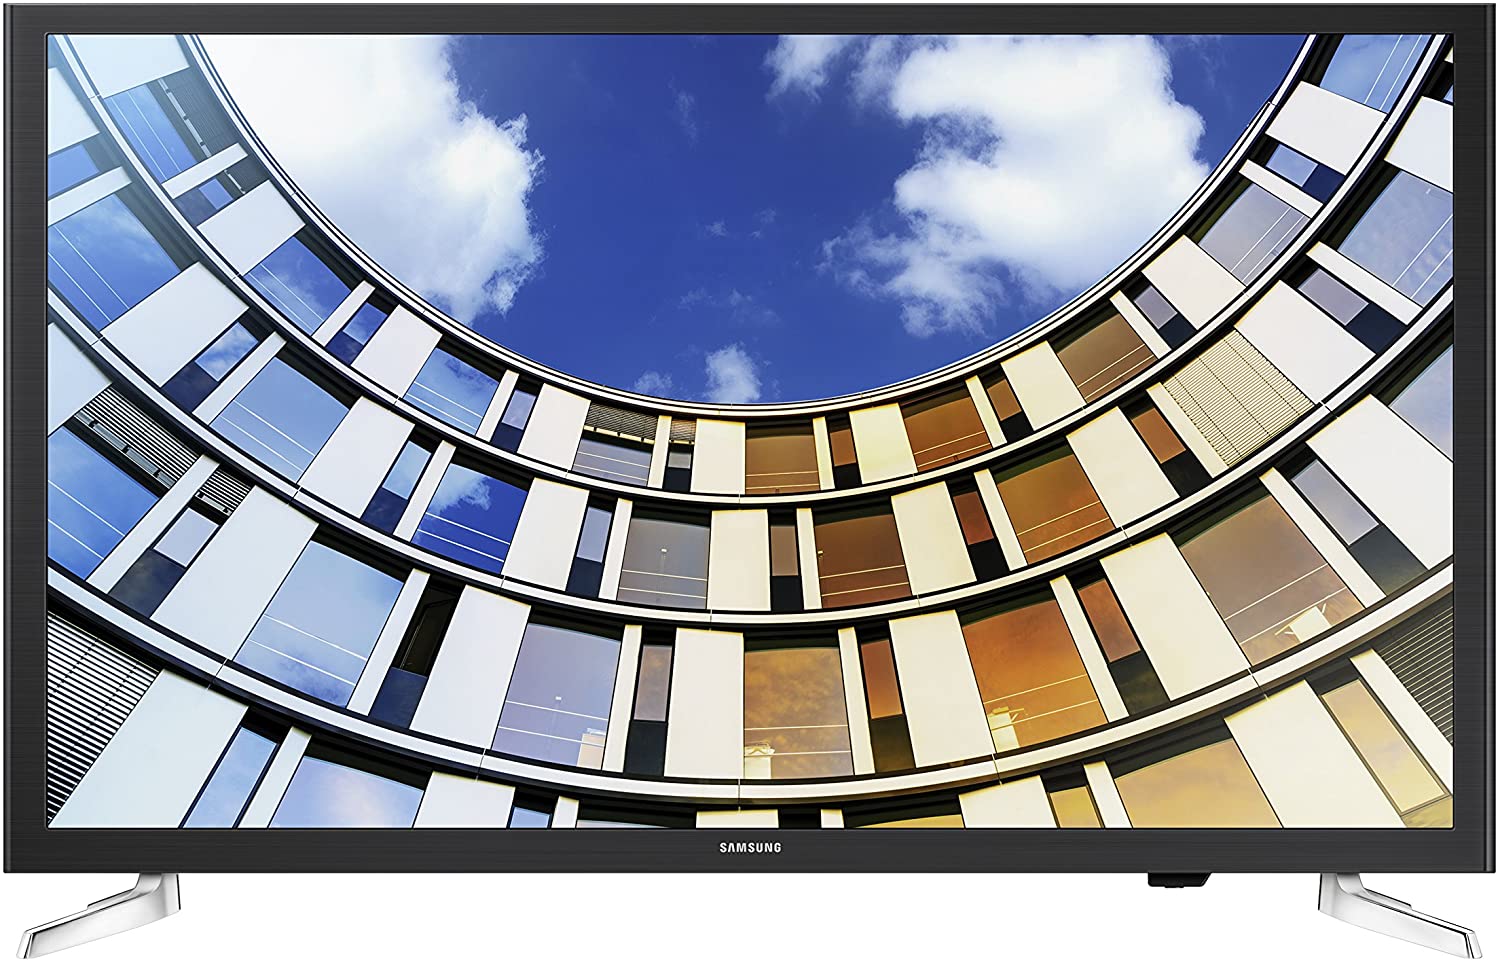 Samsung UN32M5300 - 32 inch Smart TV